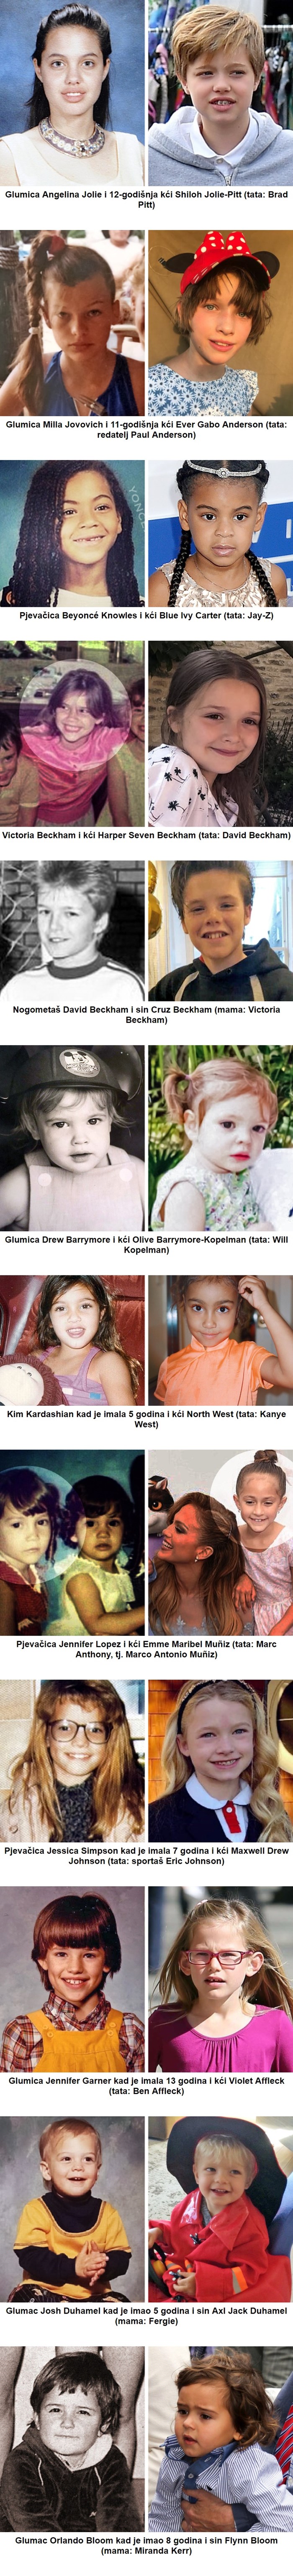 Usporedili su slike poznatih osoba i njihove djece, na ovim fotografijama imaju isti broj godina